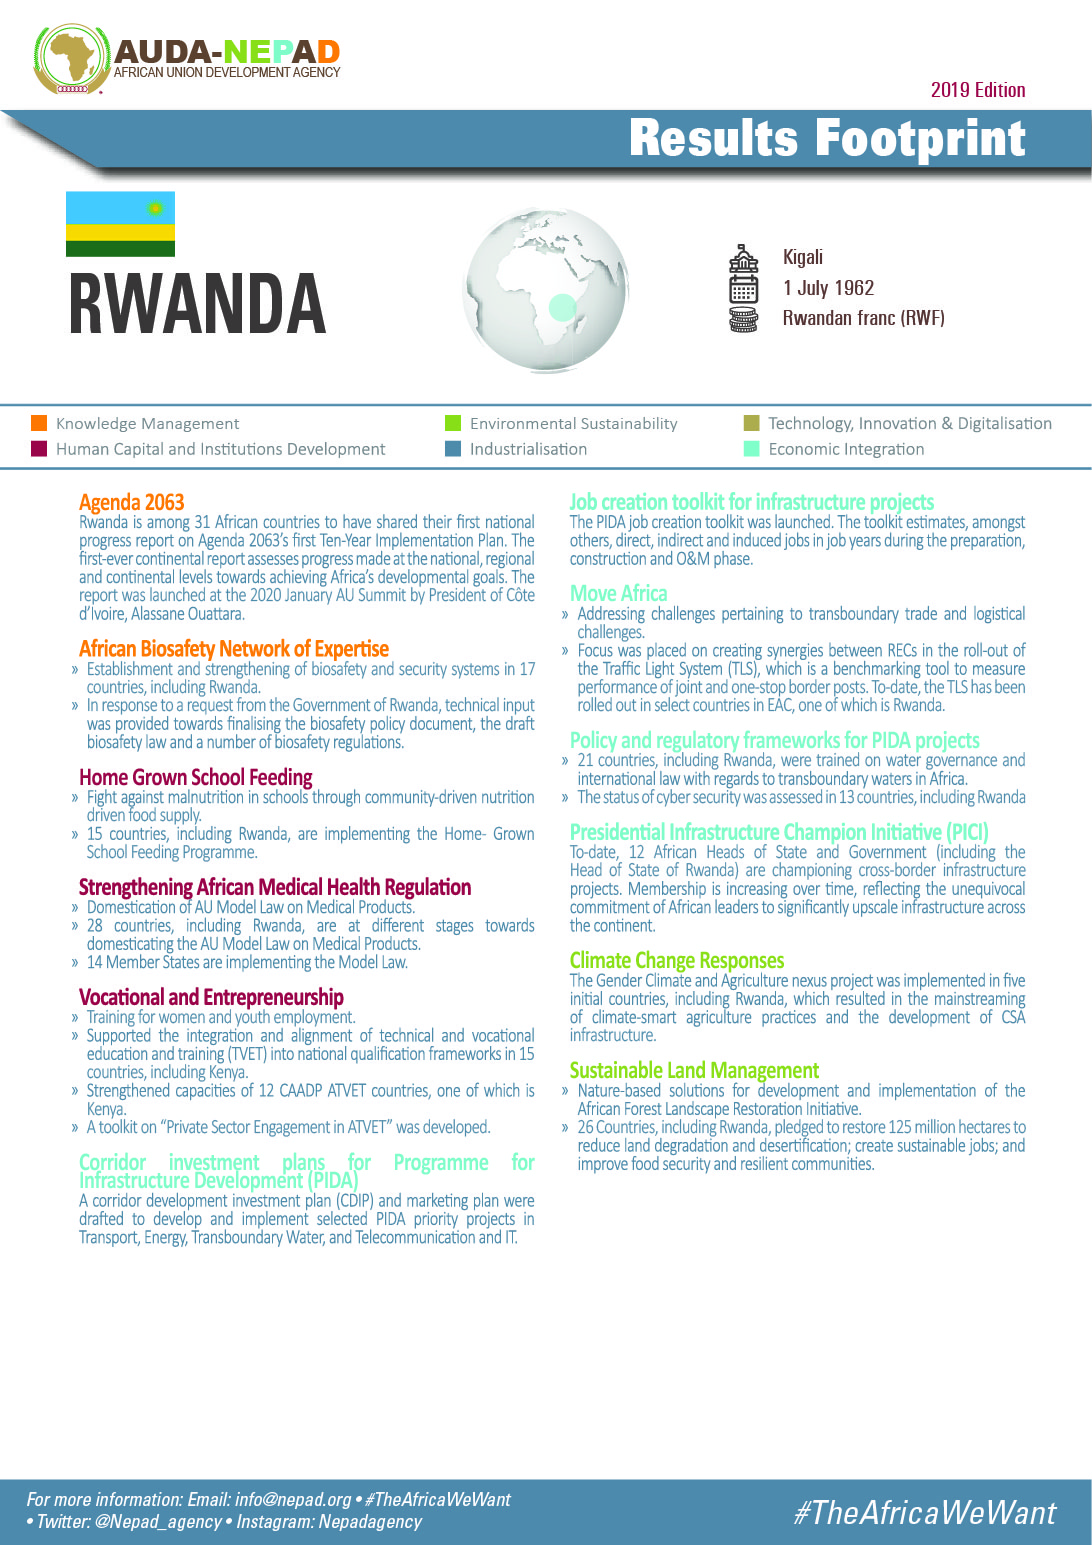 2019 AUDA-NEPAD Footprint: Country Profiles: Rwanda